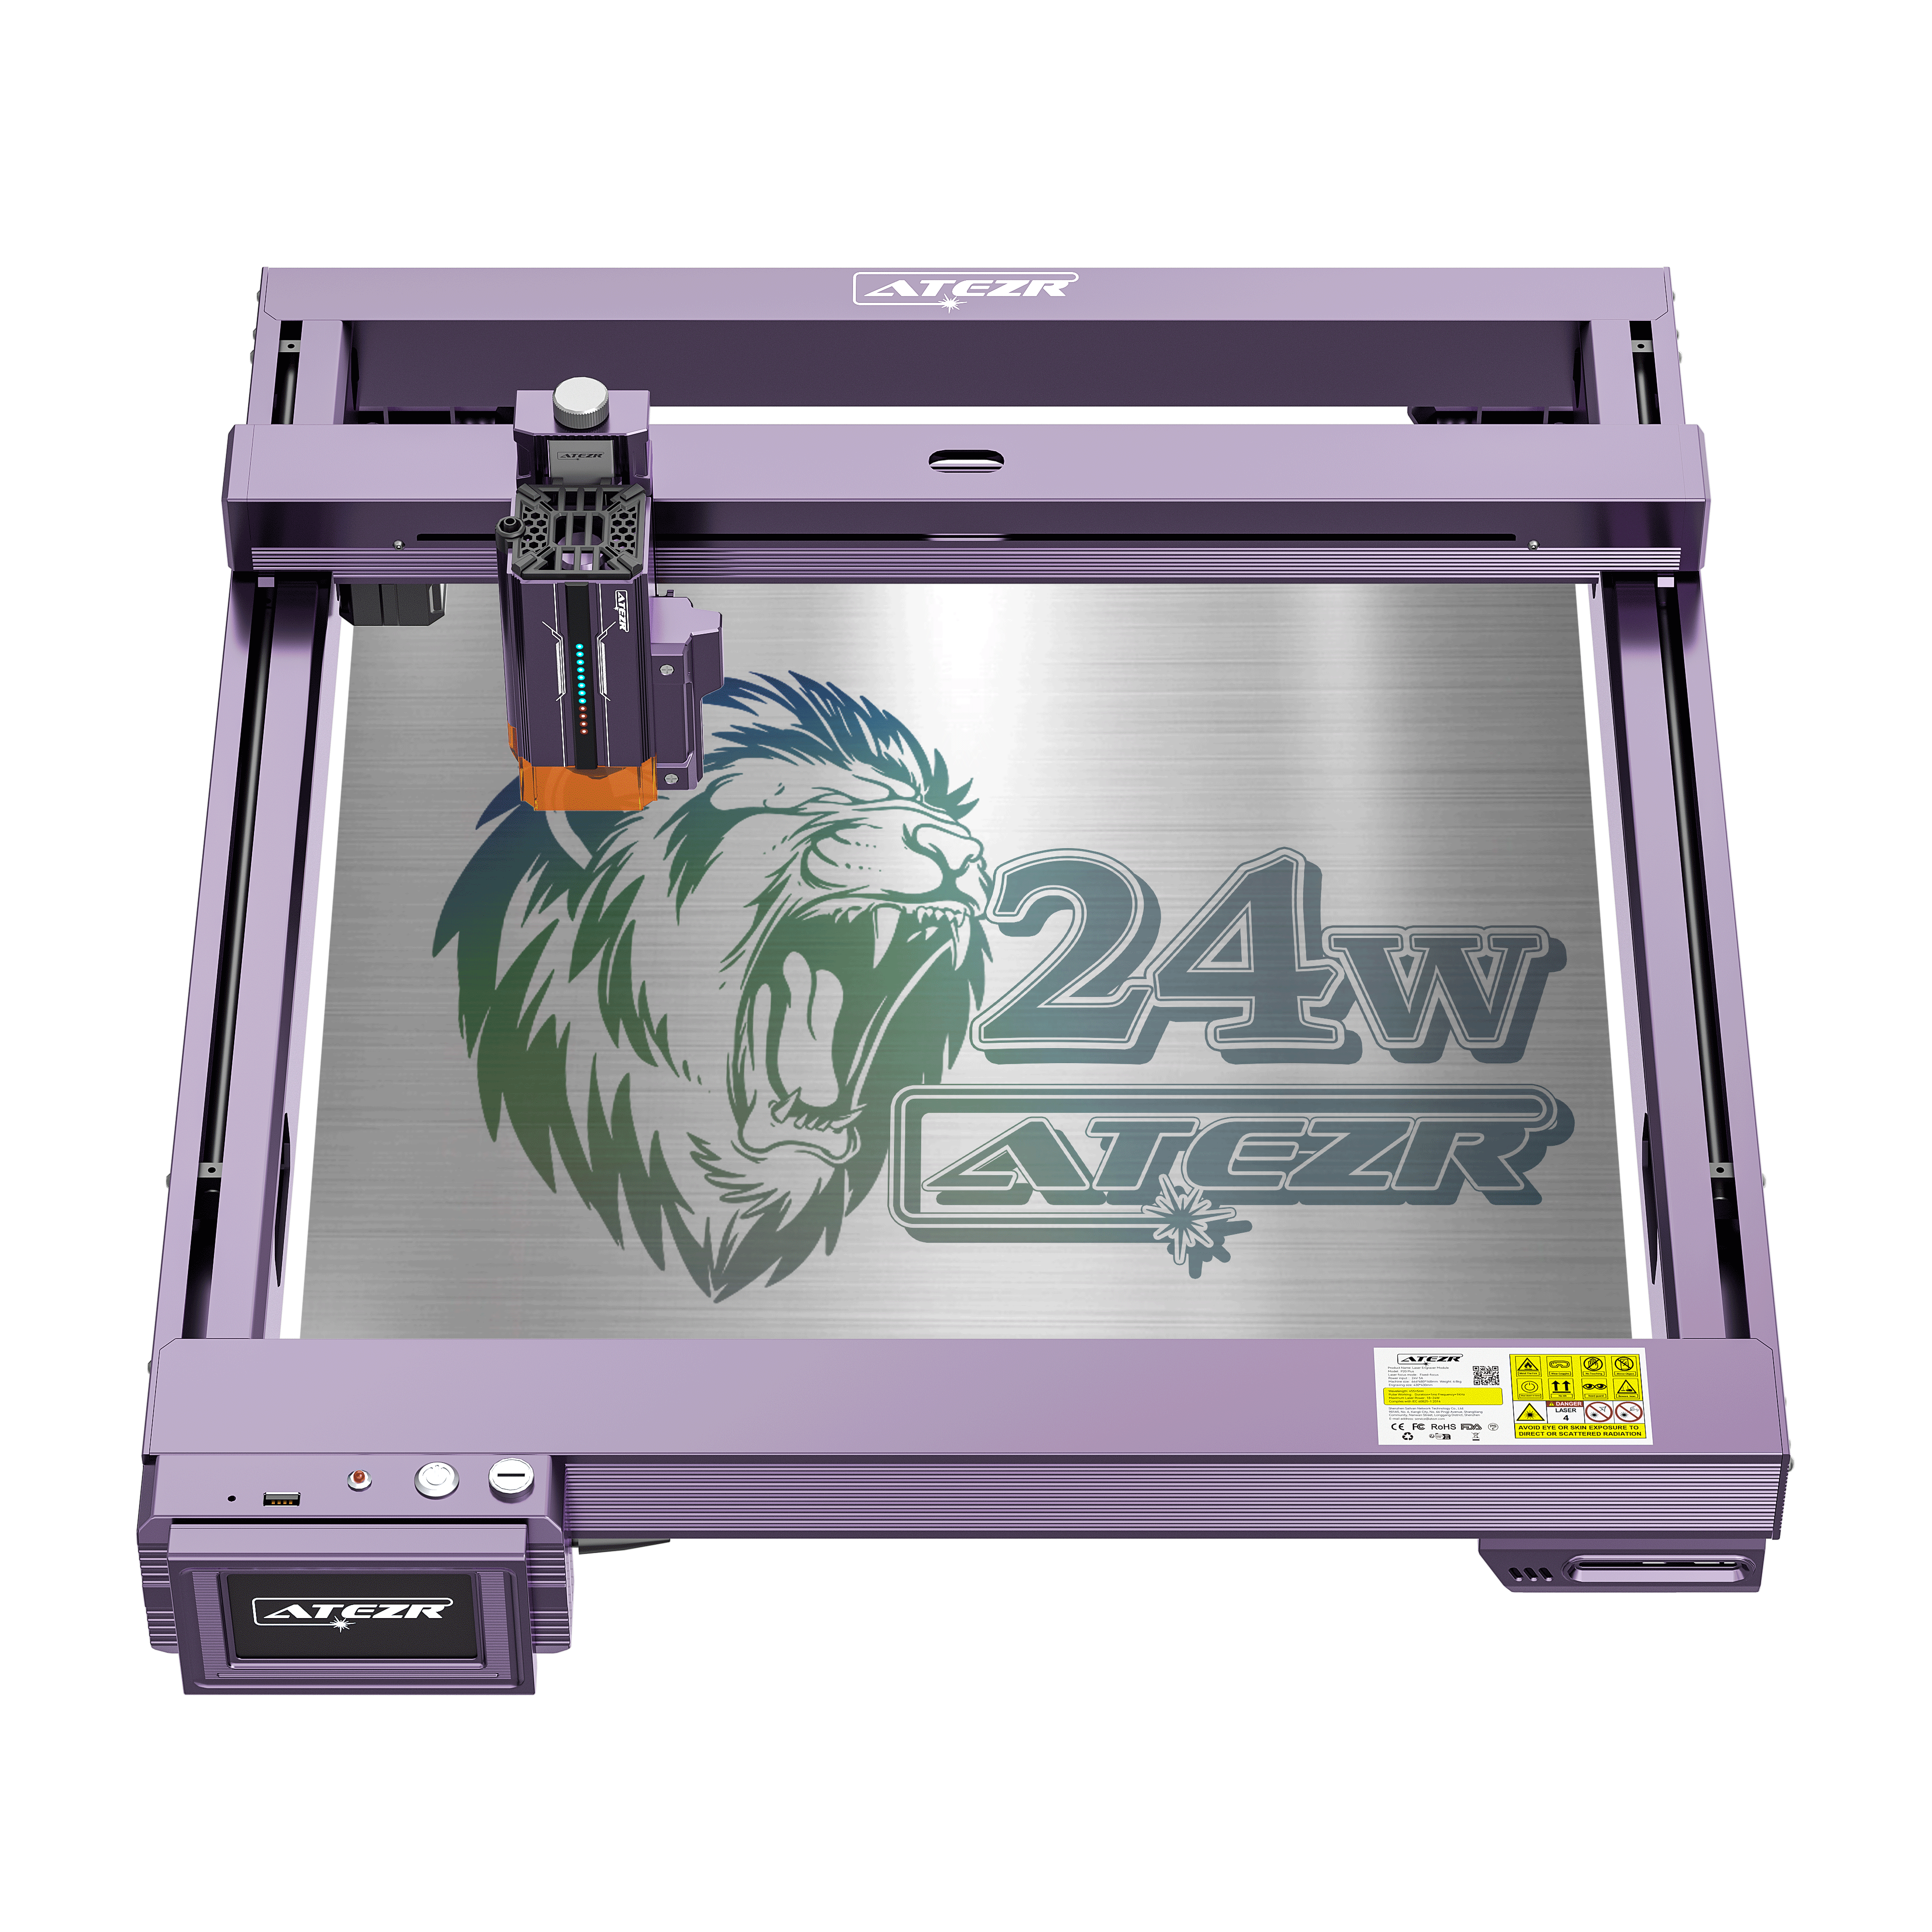 Atezr L2 24W Laser Engraver [Pre-Sale]